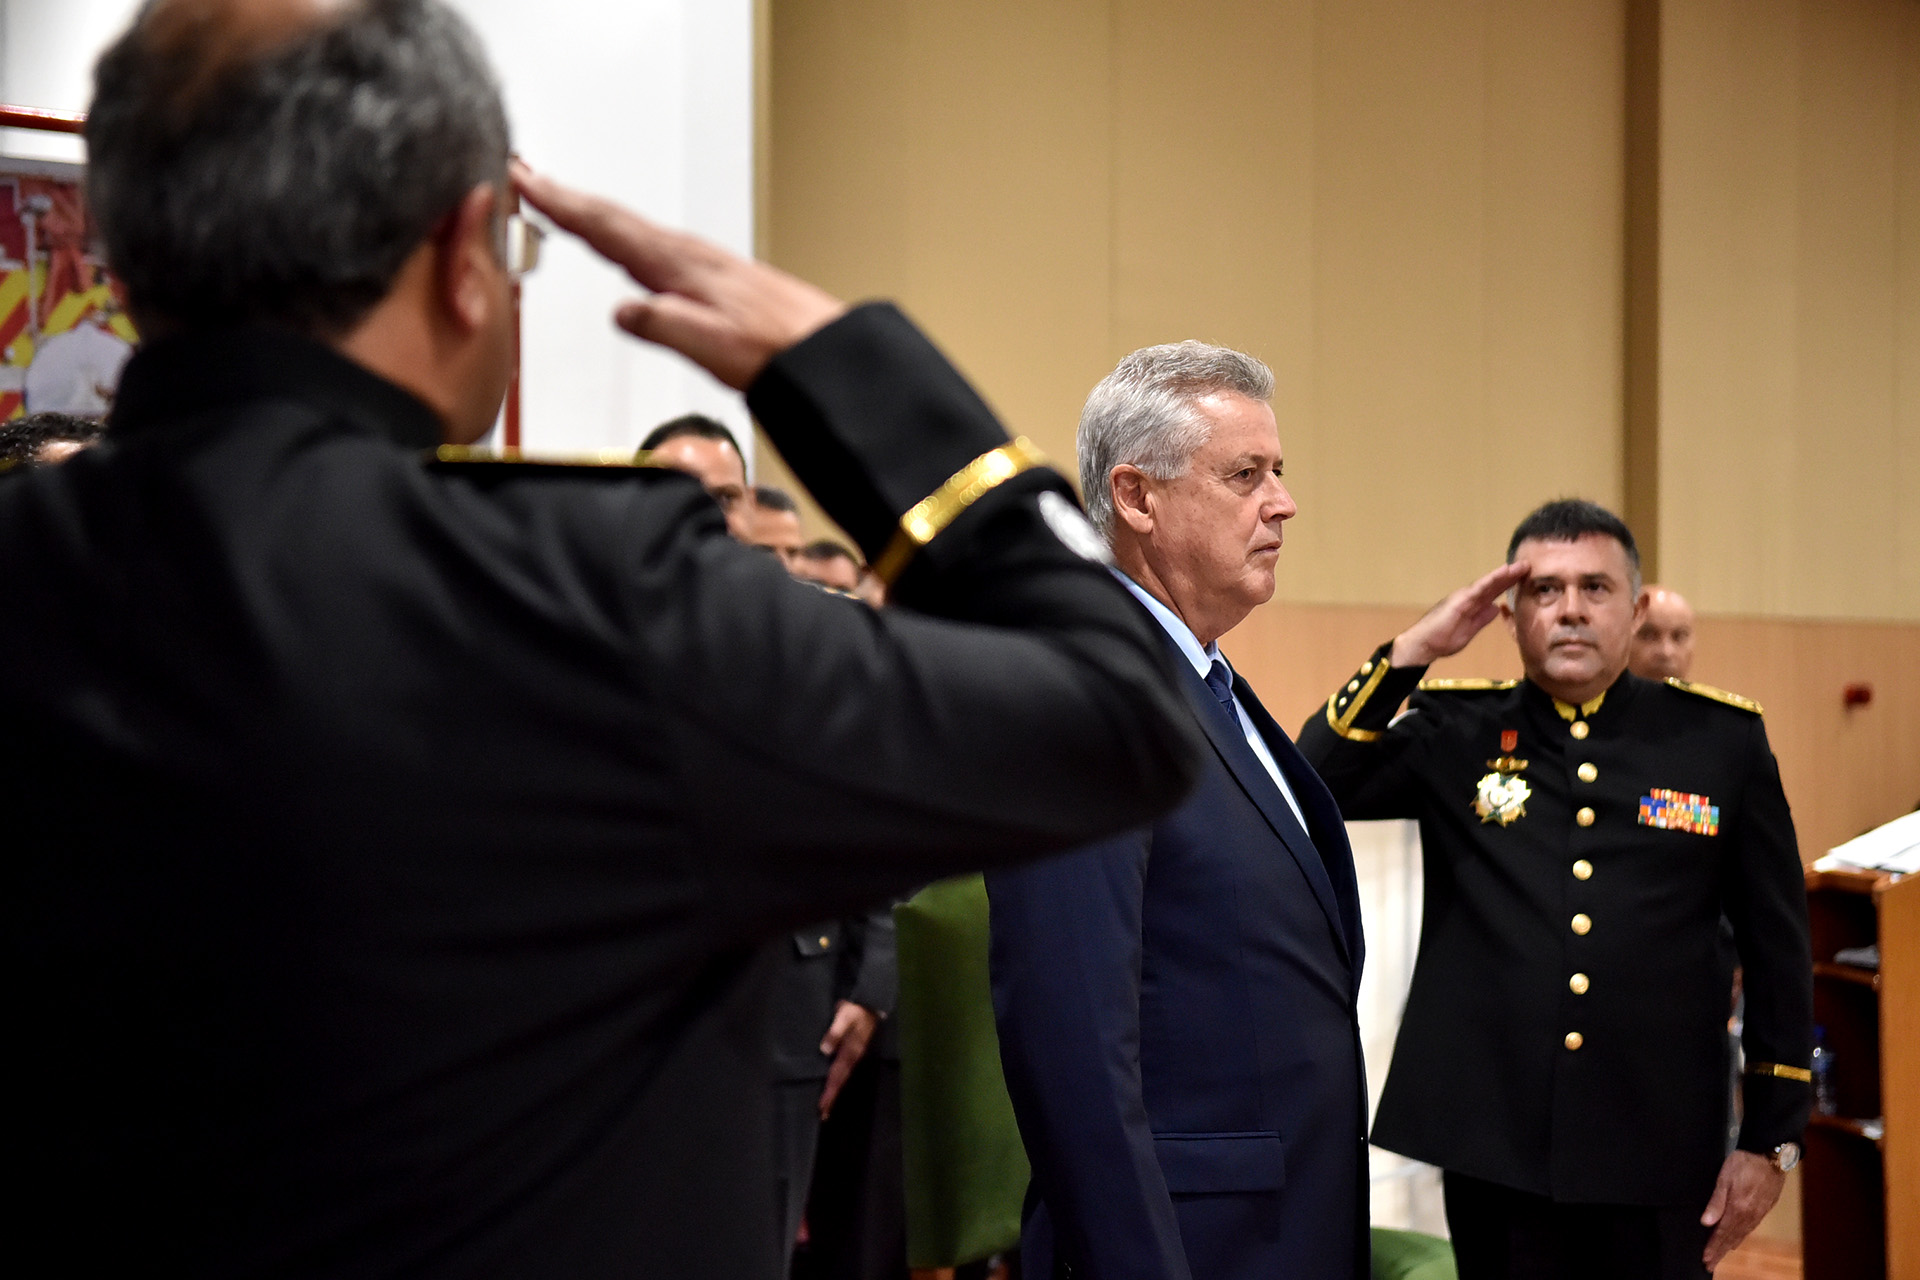 O novo comandante-geral do Corpo de Bombeiros Militar do Distrito Federal, coronel Francisco Roberto de Matos Guedes, de 50 anos, assumiu oficialmente o cargo na tarde desta quinta-feira (6).